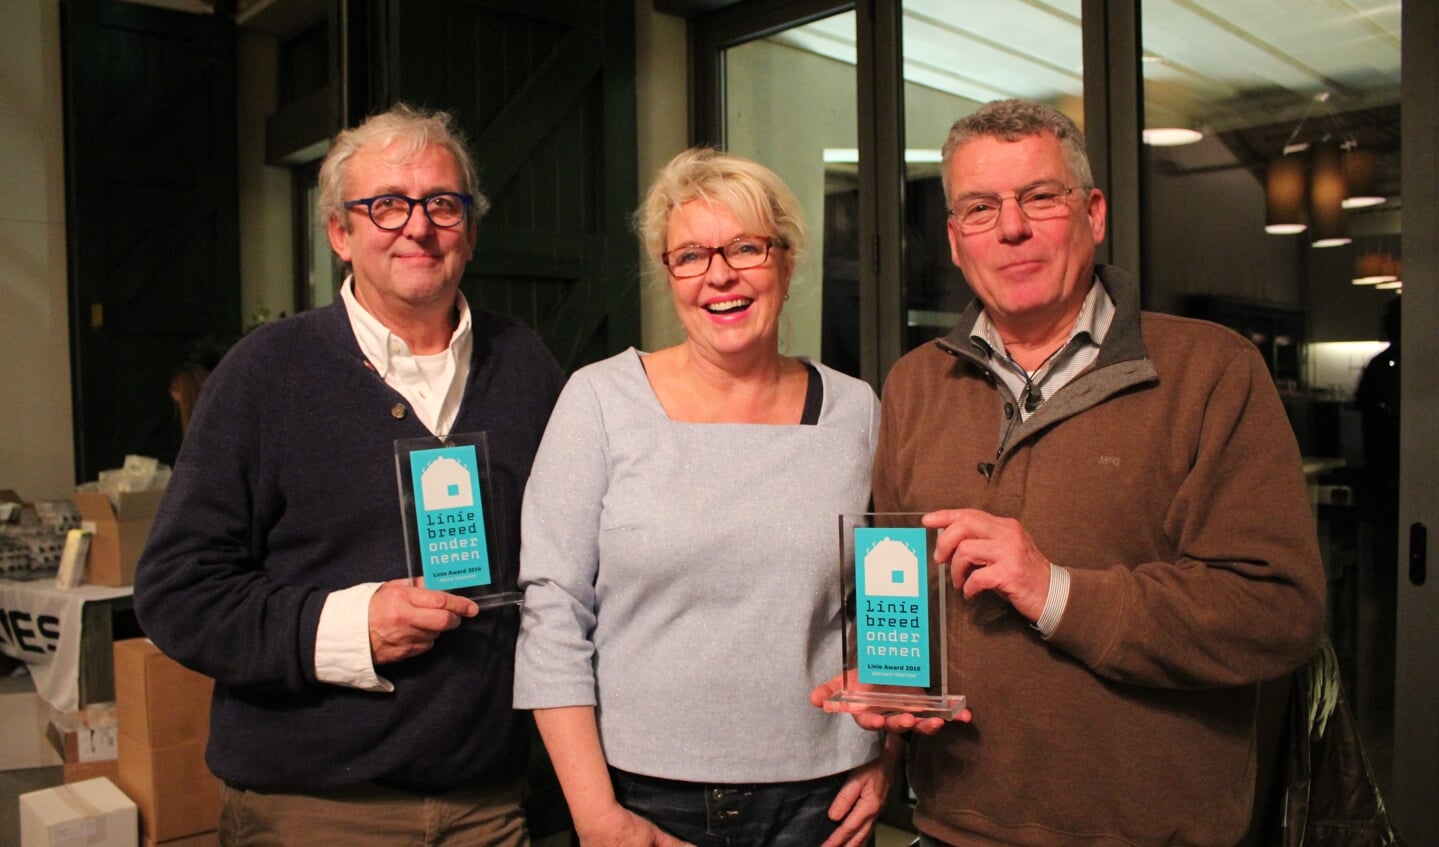 Steven van Nie, Marius Heslenfeld en zijn vrouw nemen de Linie Award 2016 in ontvangst.